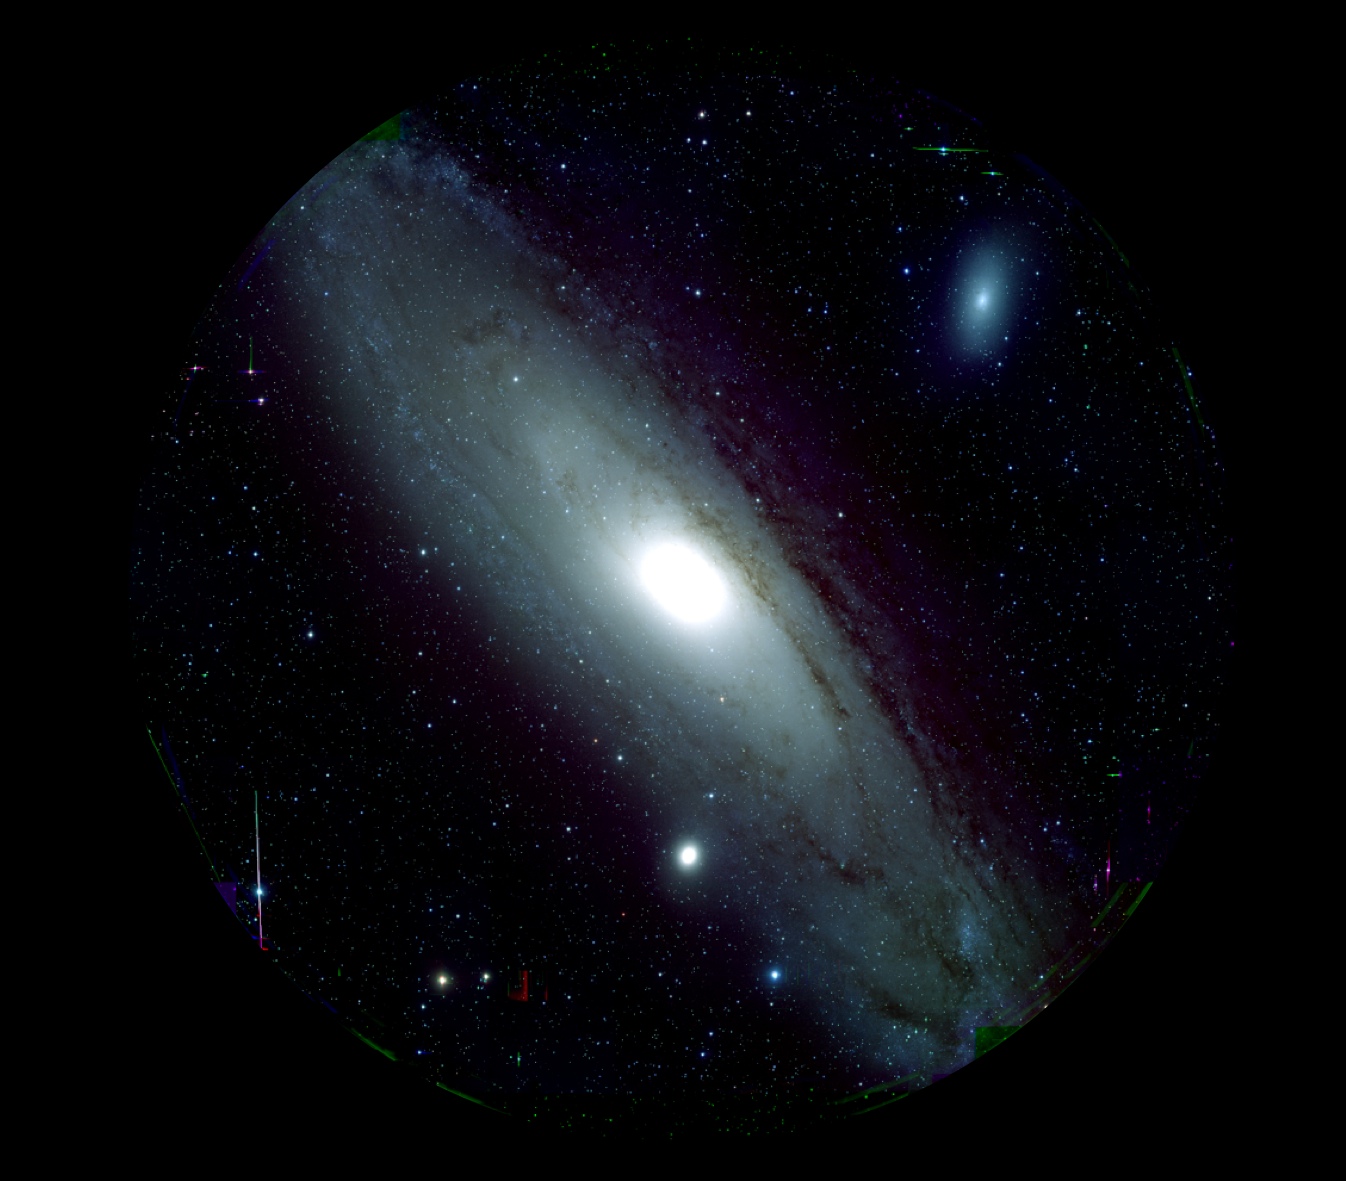 図１: すばる望遠鏡に搭載された HSC がとらえたアンドロメダ銀河 M31 の姿。g,&nbsp;r, i バンドの画像が青、緑、赤色に対応し、それぞれ10分積分 (露出) です。画像をクリックすると拡大画像 が表示されます。(クレジット：HSC Project / 国立天文台)